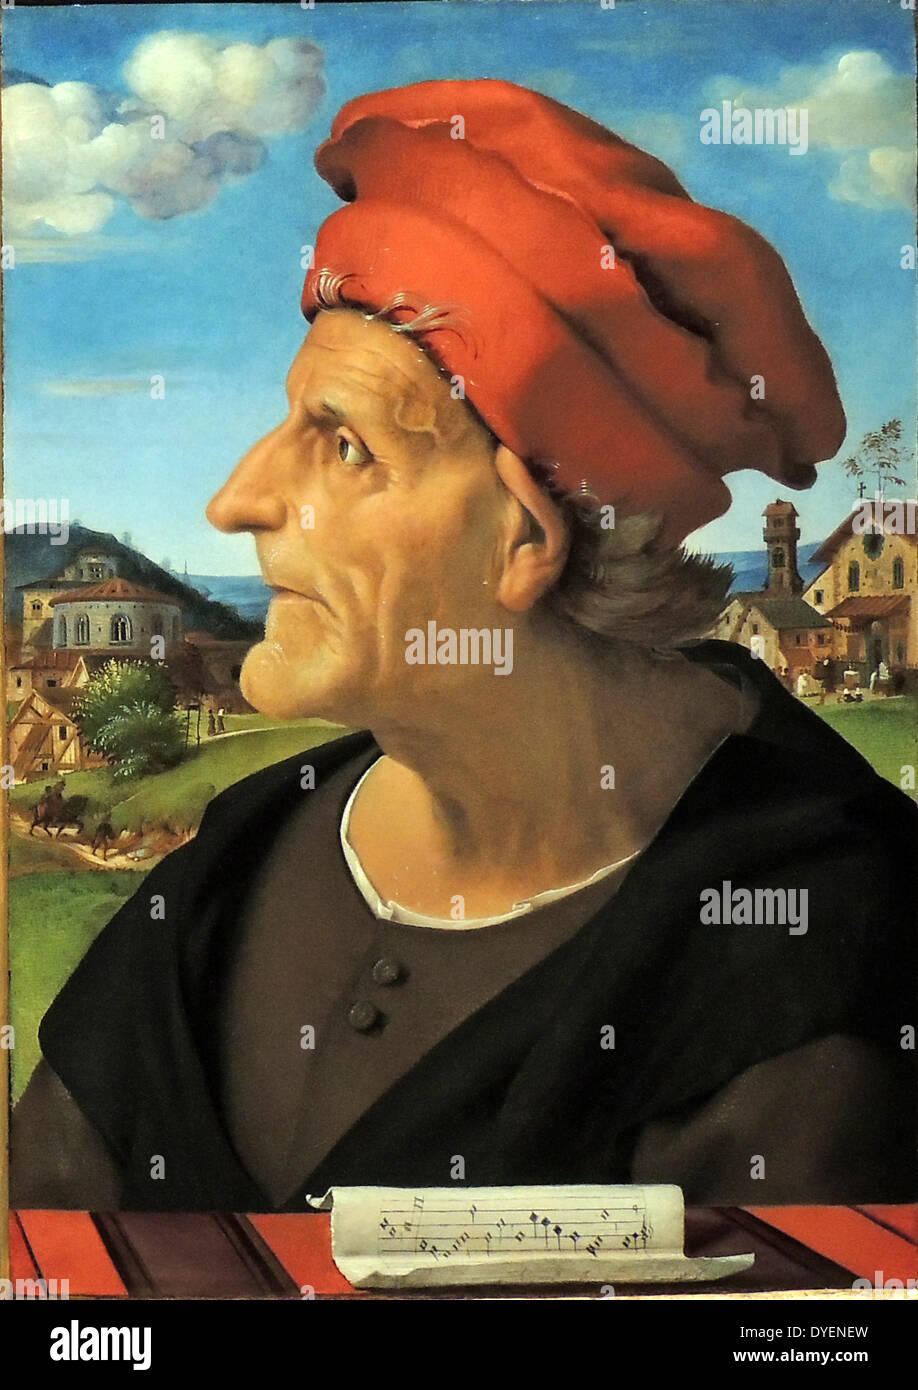 Portrait de Francesco da Sangallo par Piero di Cosimo, 1482 - 1485. Piero di Cosimo (2 janvier 1462 - 12 avril 1522), également connu sous le nom de Piero di Lorenzo, était un peintre italien de la Renaissance Florentine. diptyque montrant l'architecte Francesco de Sangallo (1494-1576), un sculpteur de la Haute Renaissance italienne Banque D'Images